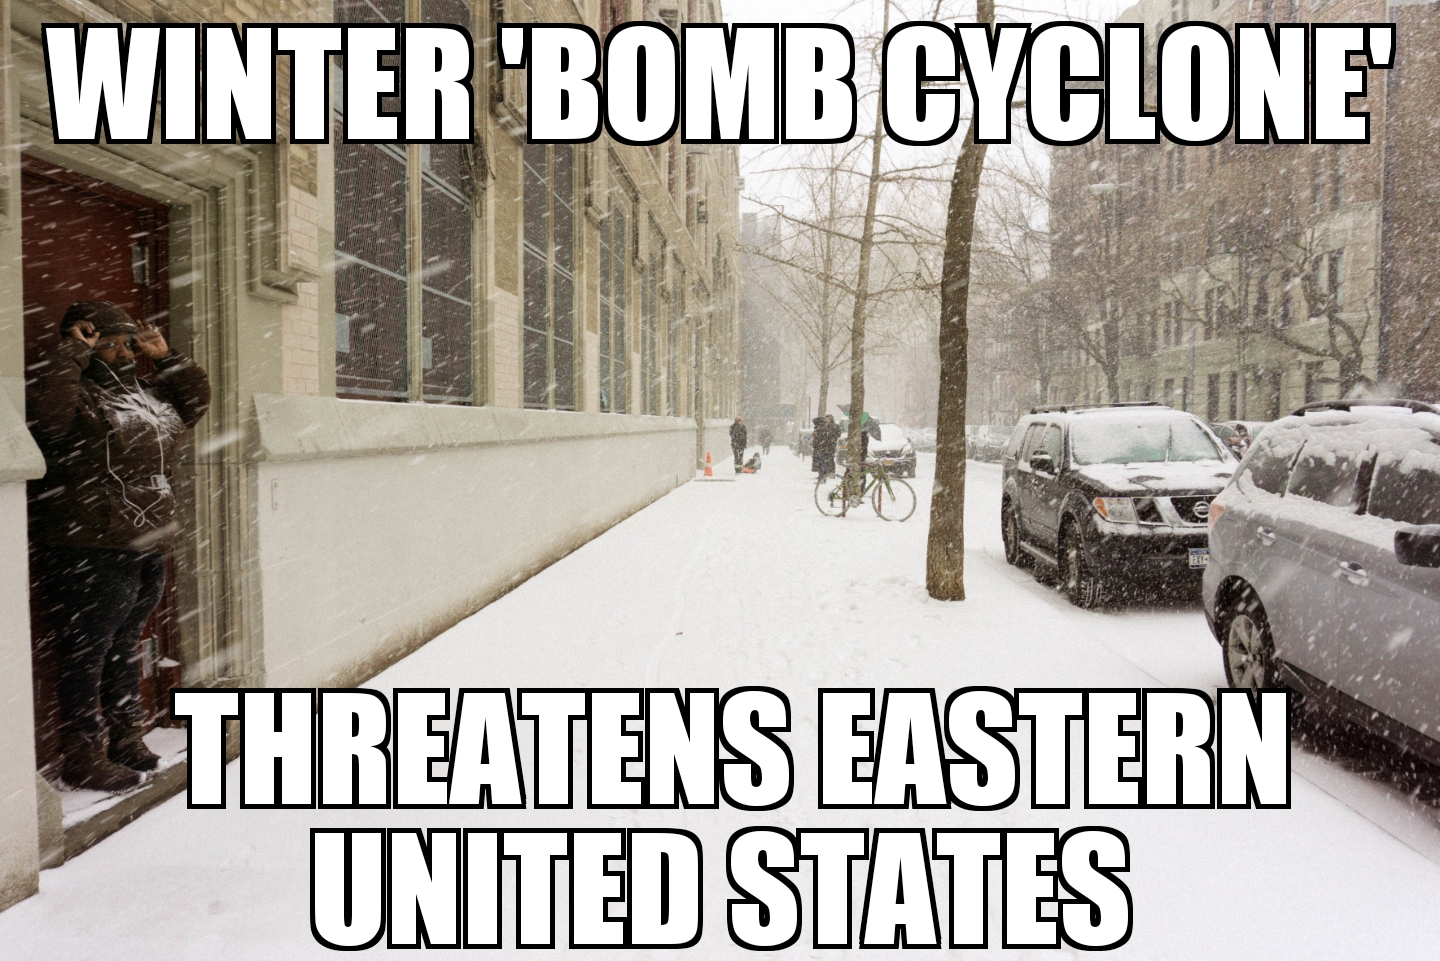 Bomb Cyclone threatens eastern U.S.